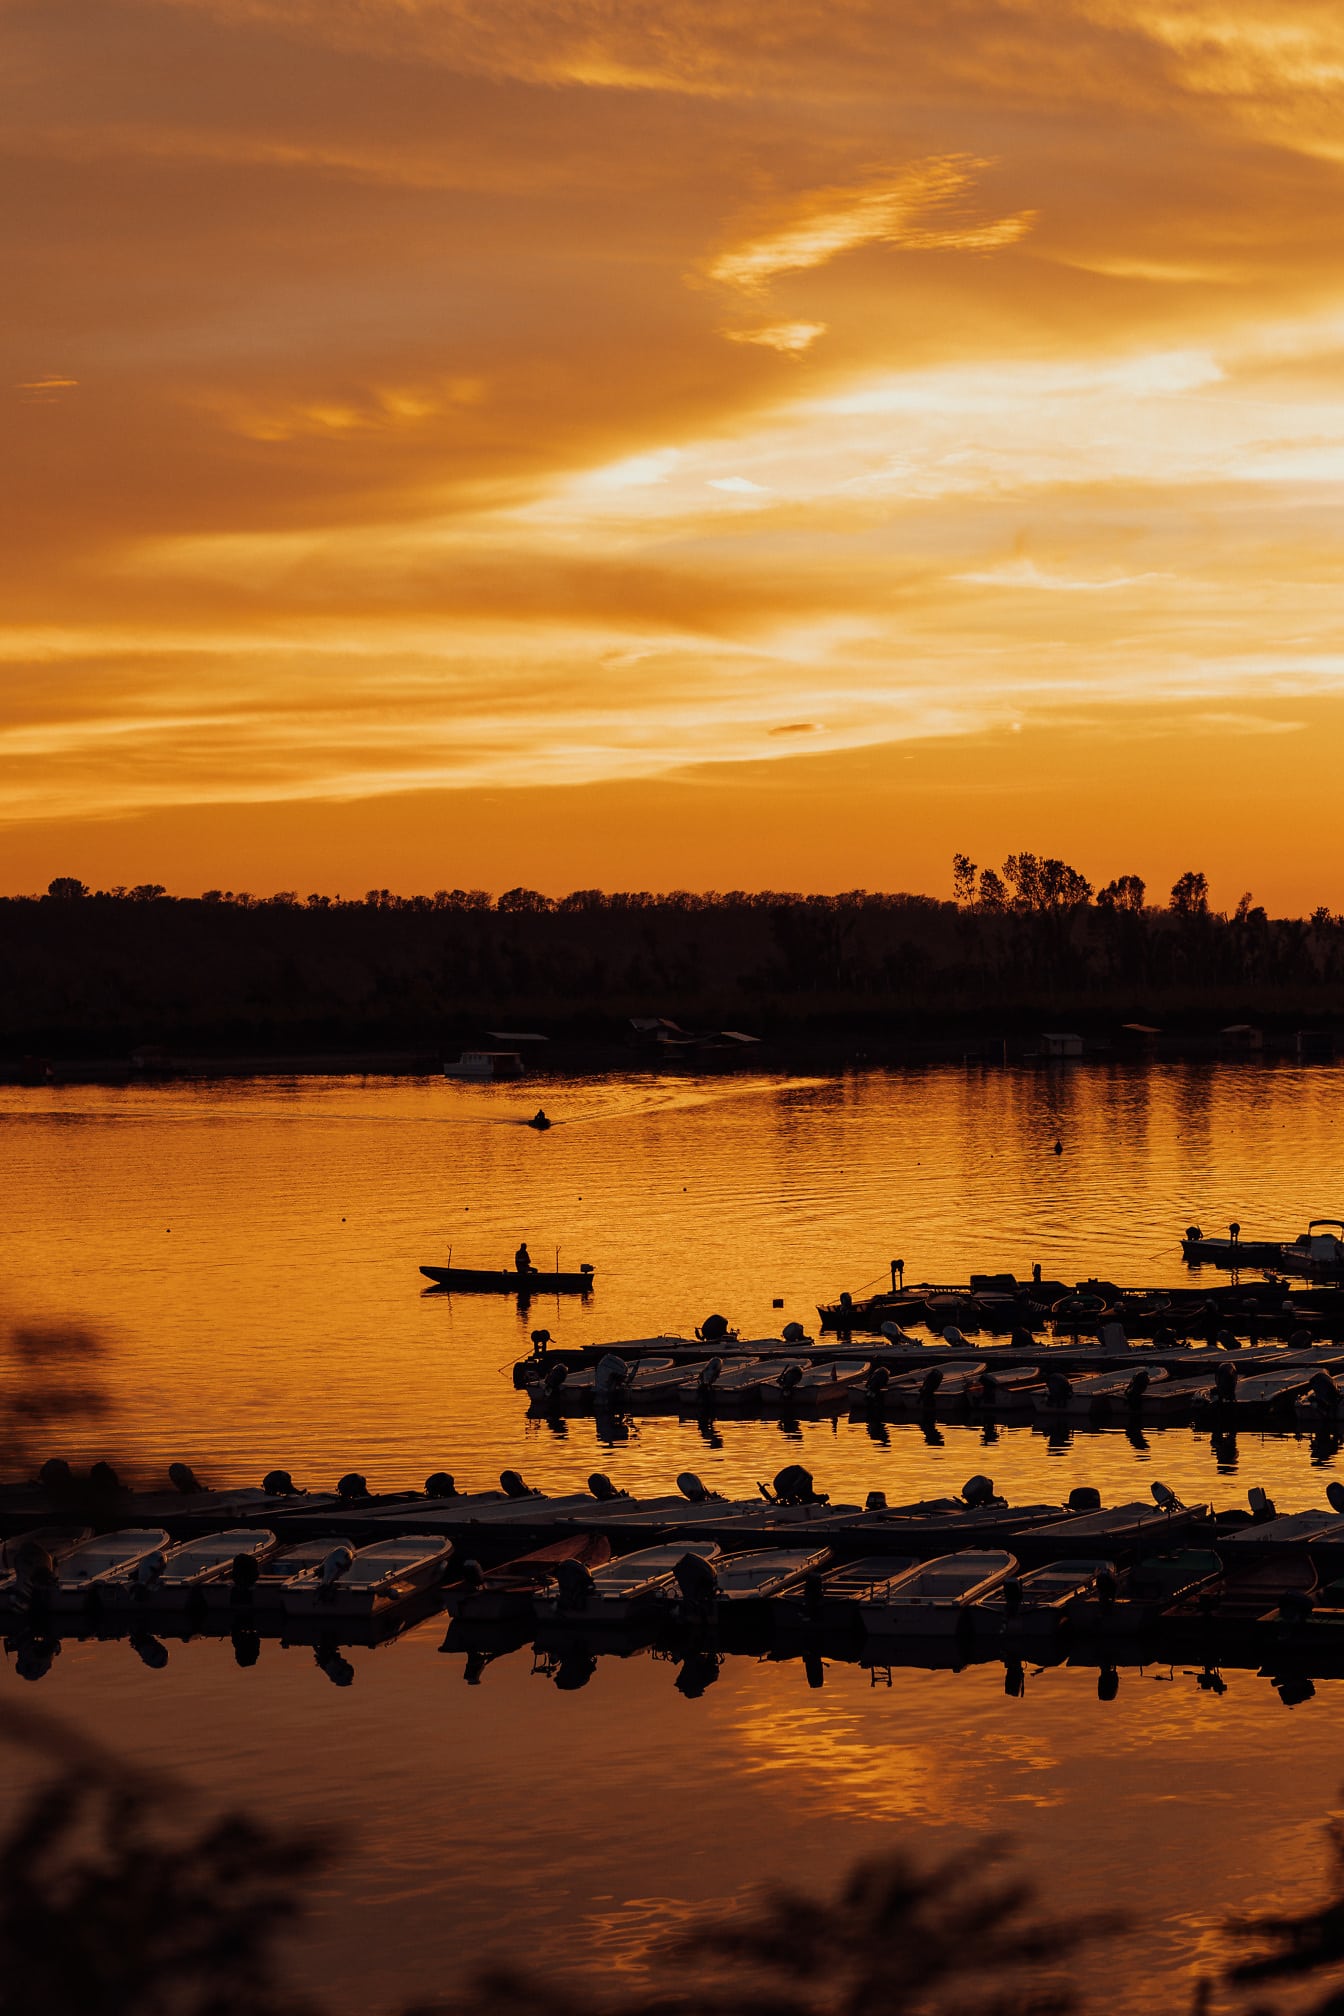 Μαγευτική αντανάκλαση ηλιοβασιλέματος στην όχθη της λίμνης με σιλουέτα σκαφών στο λιμάνι